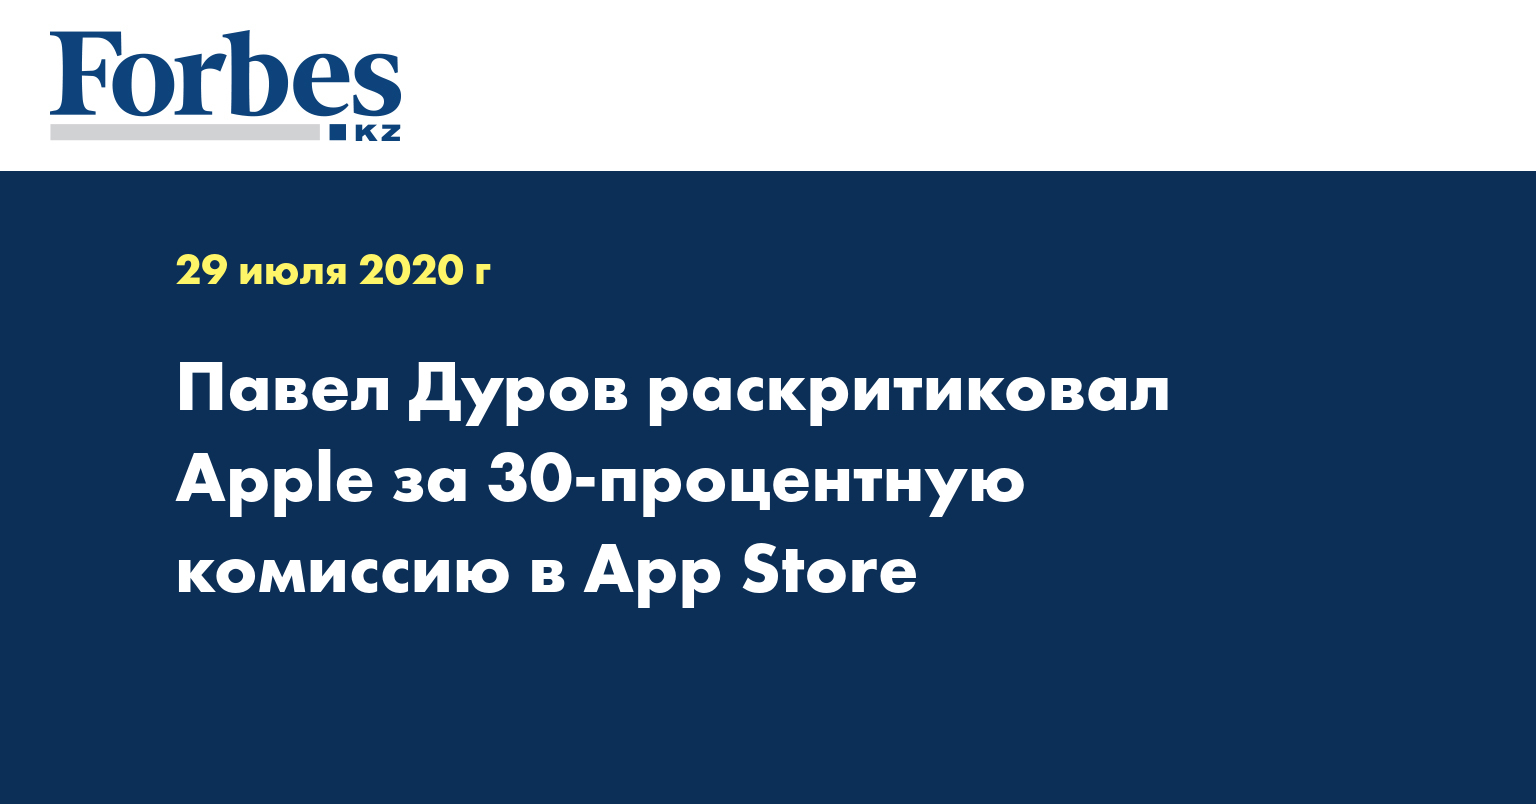 Павел Дуров раскритиковал Apple за 30-процентную комиссию в App Store